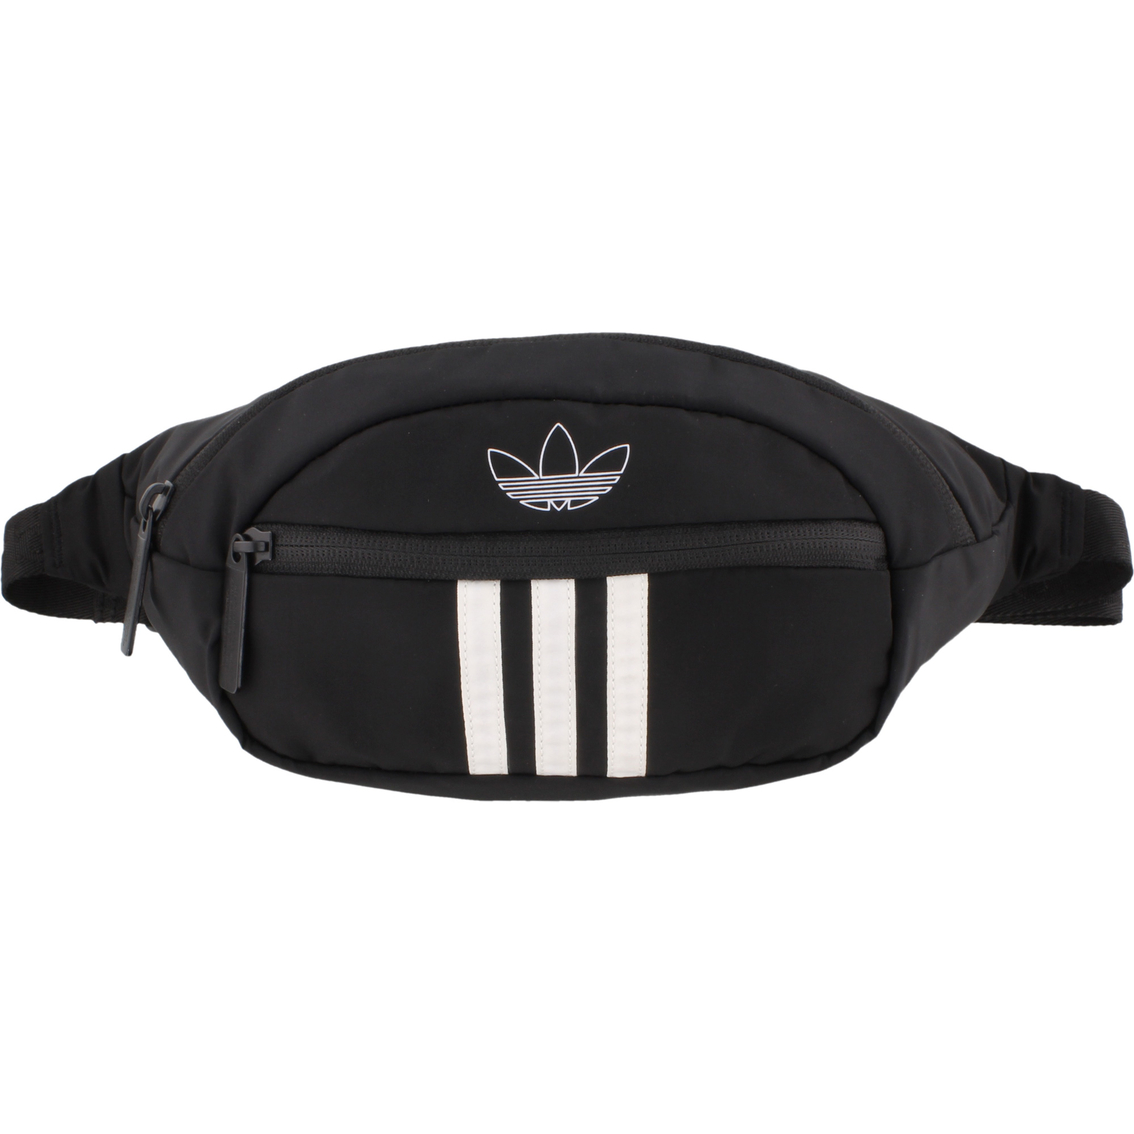 Adidas Originals National 3 Stripes Waist Pack | Crossbody Bags ...